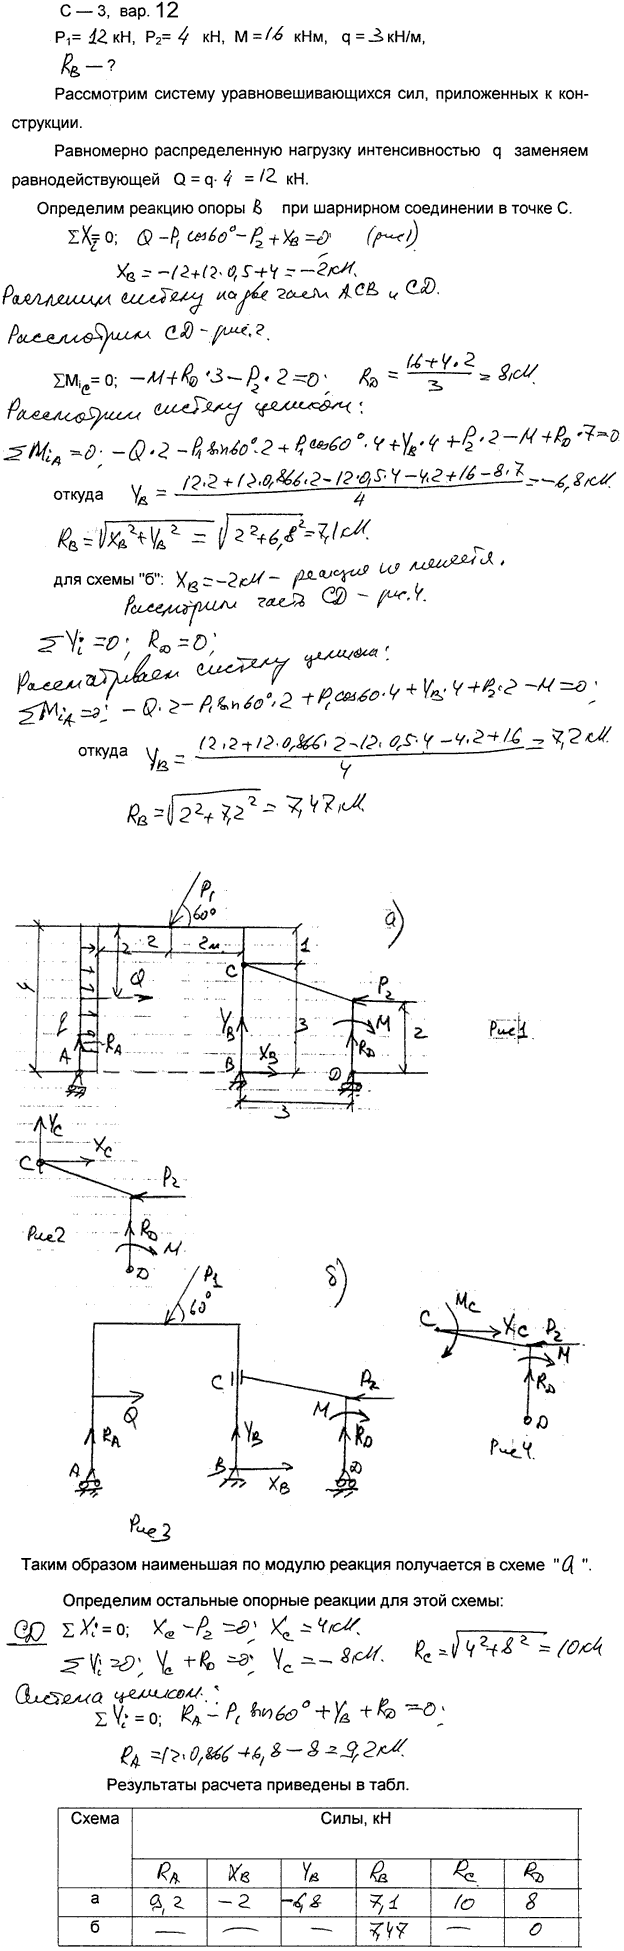 Задание C3 вариант 12. P1=12 кН; P2=4 кН; M=16 кН*м; q=3 кН/м; исследуемая реакция RB; вид скользящей заделки